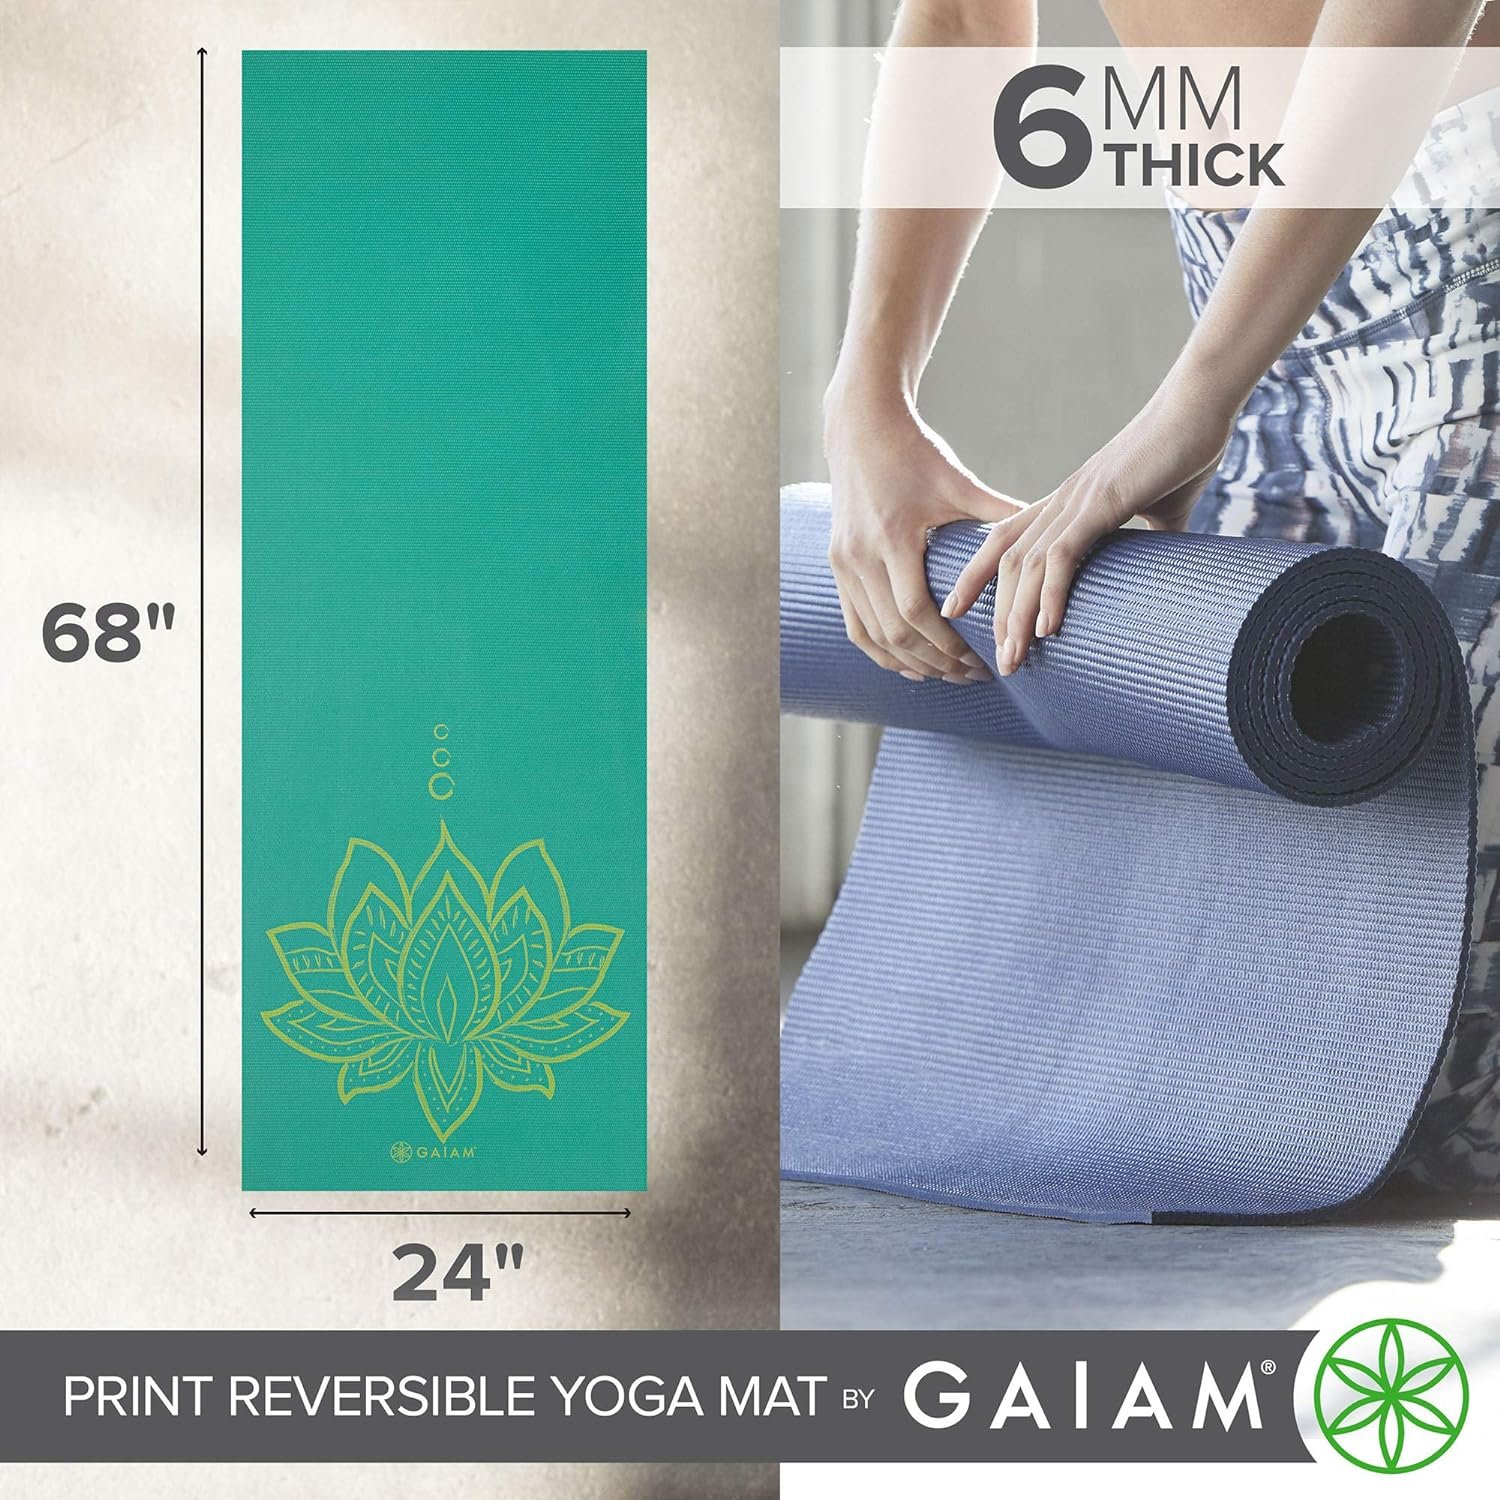 Gaiam Yoga Mat Review